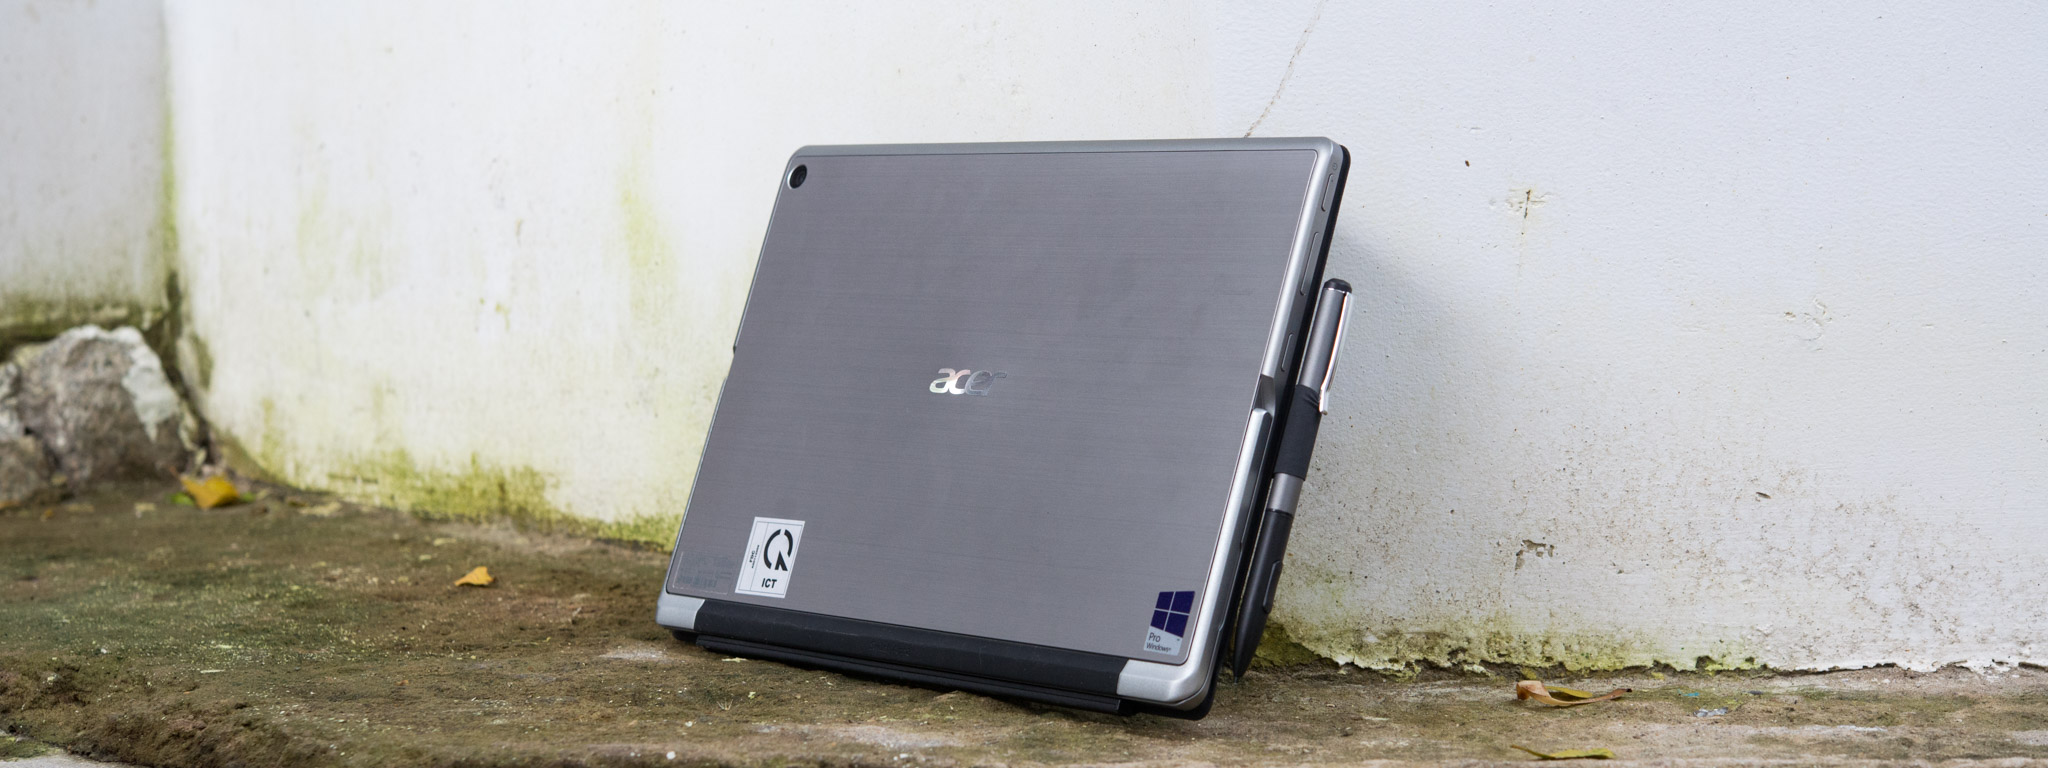 Đánh giá Acer Switch Alpha 12 – Thiết kế lai, thời lượng pin tốt, giá mềm